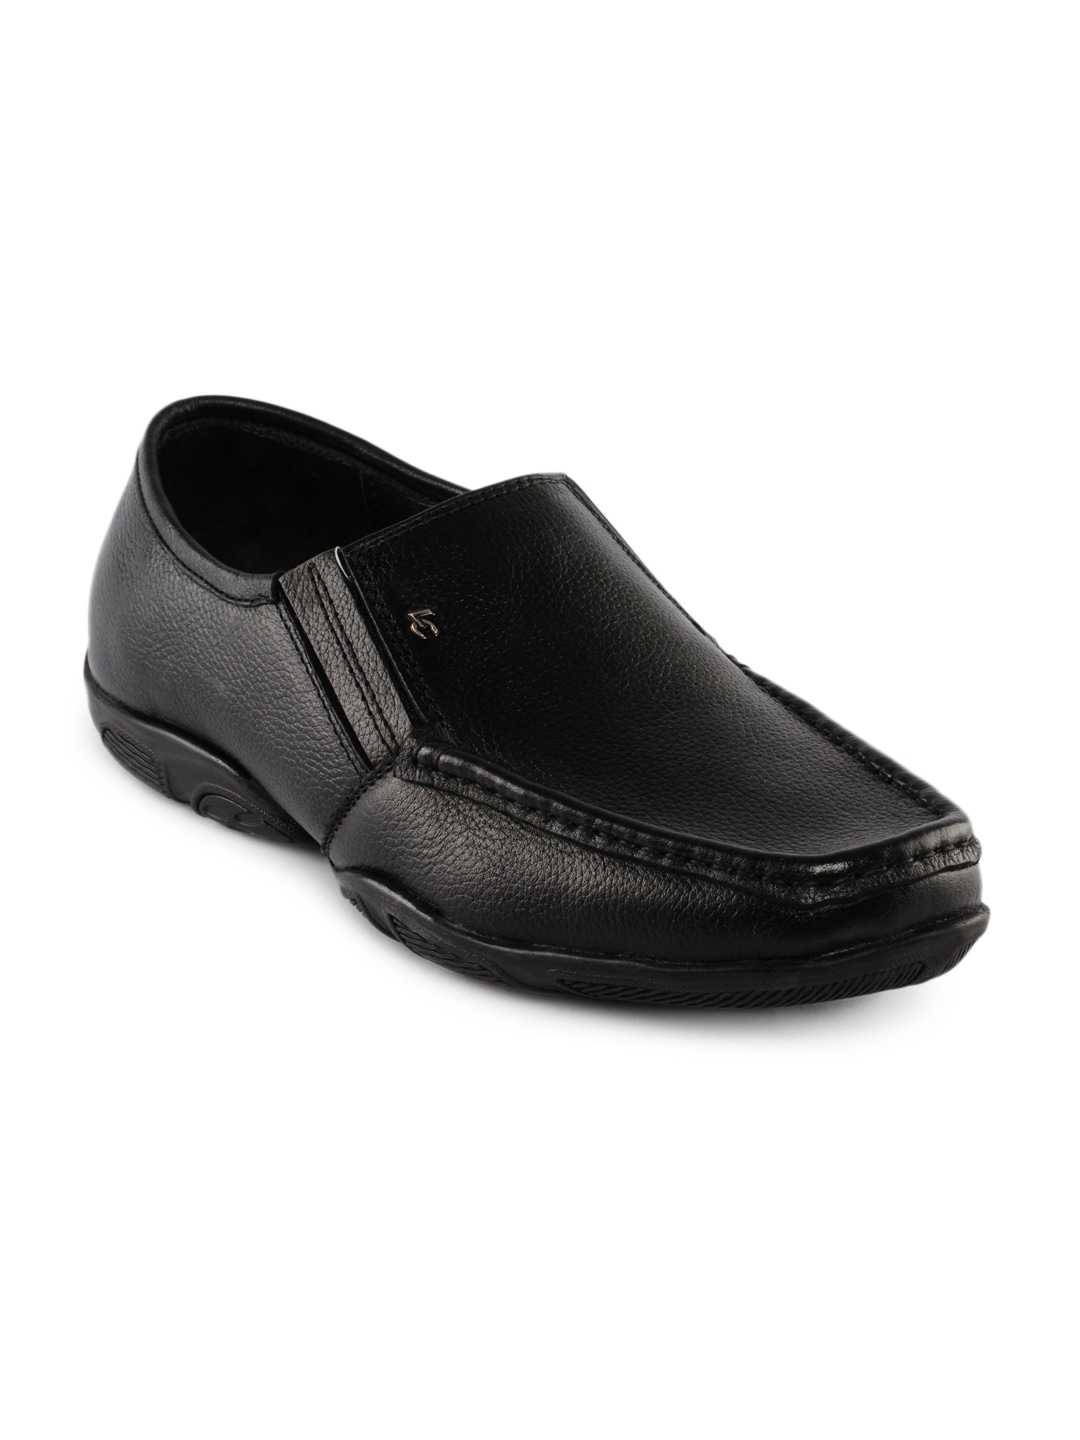 Lee Cooper Men Black Shoes